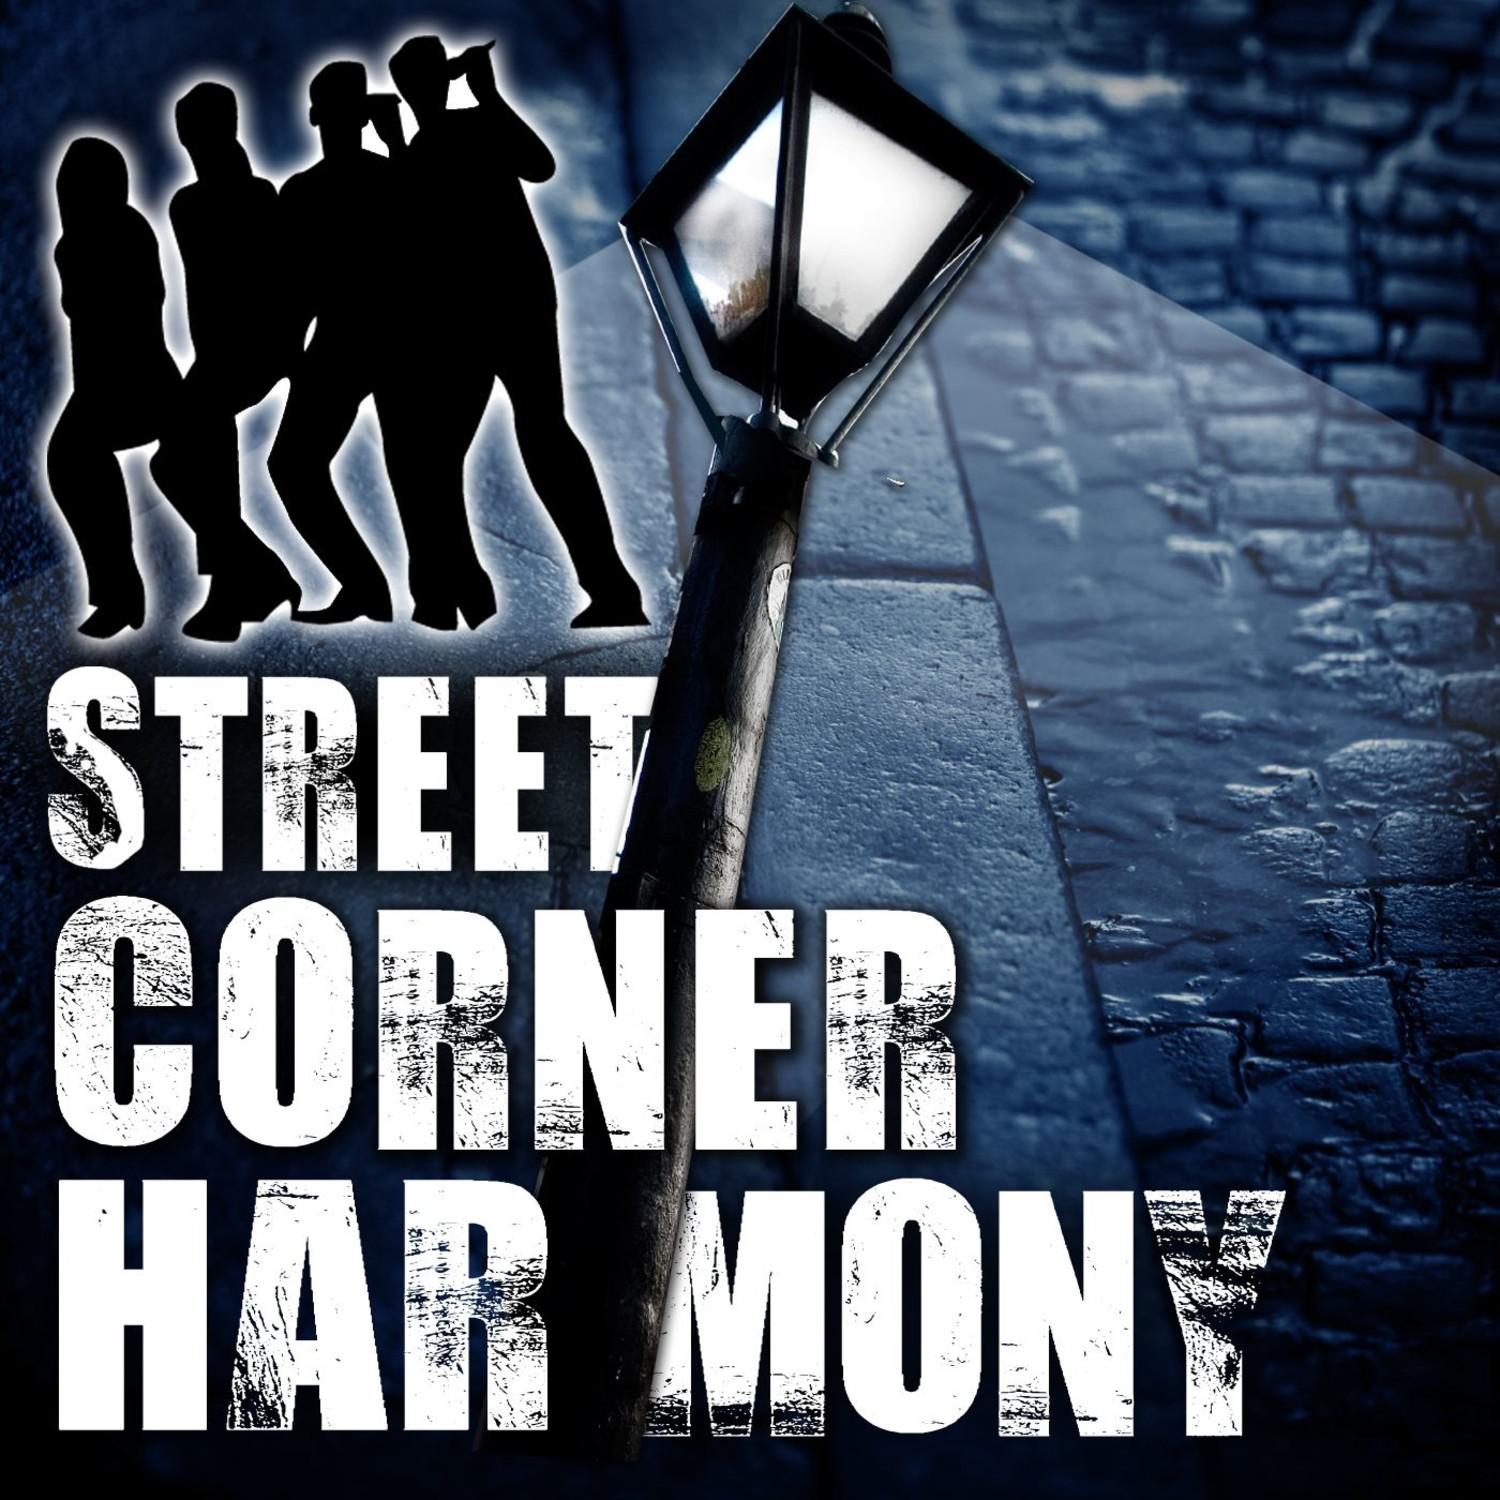 Street Corner Harmony